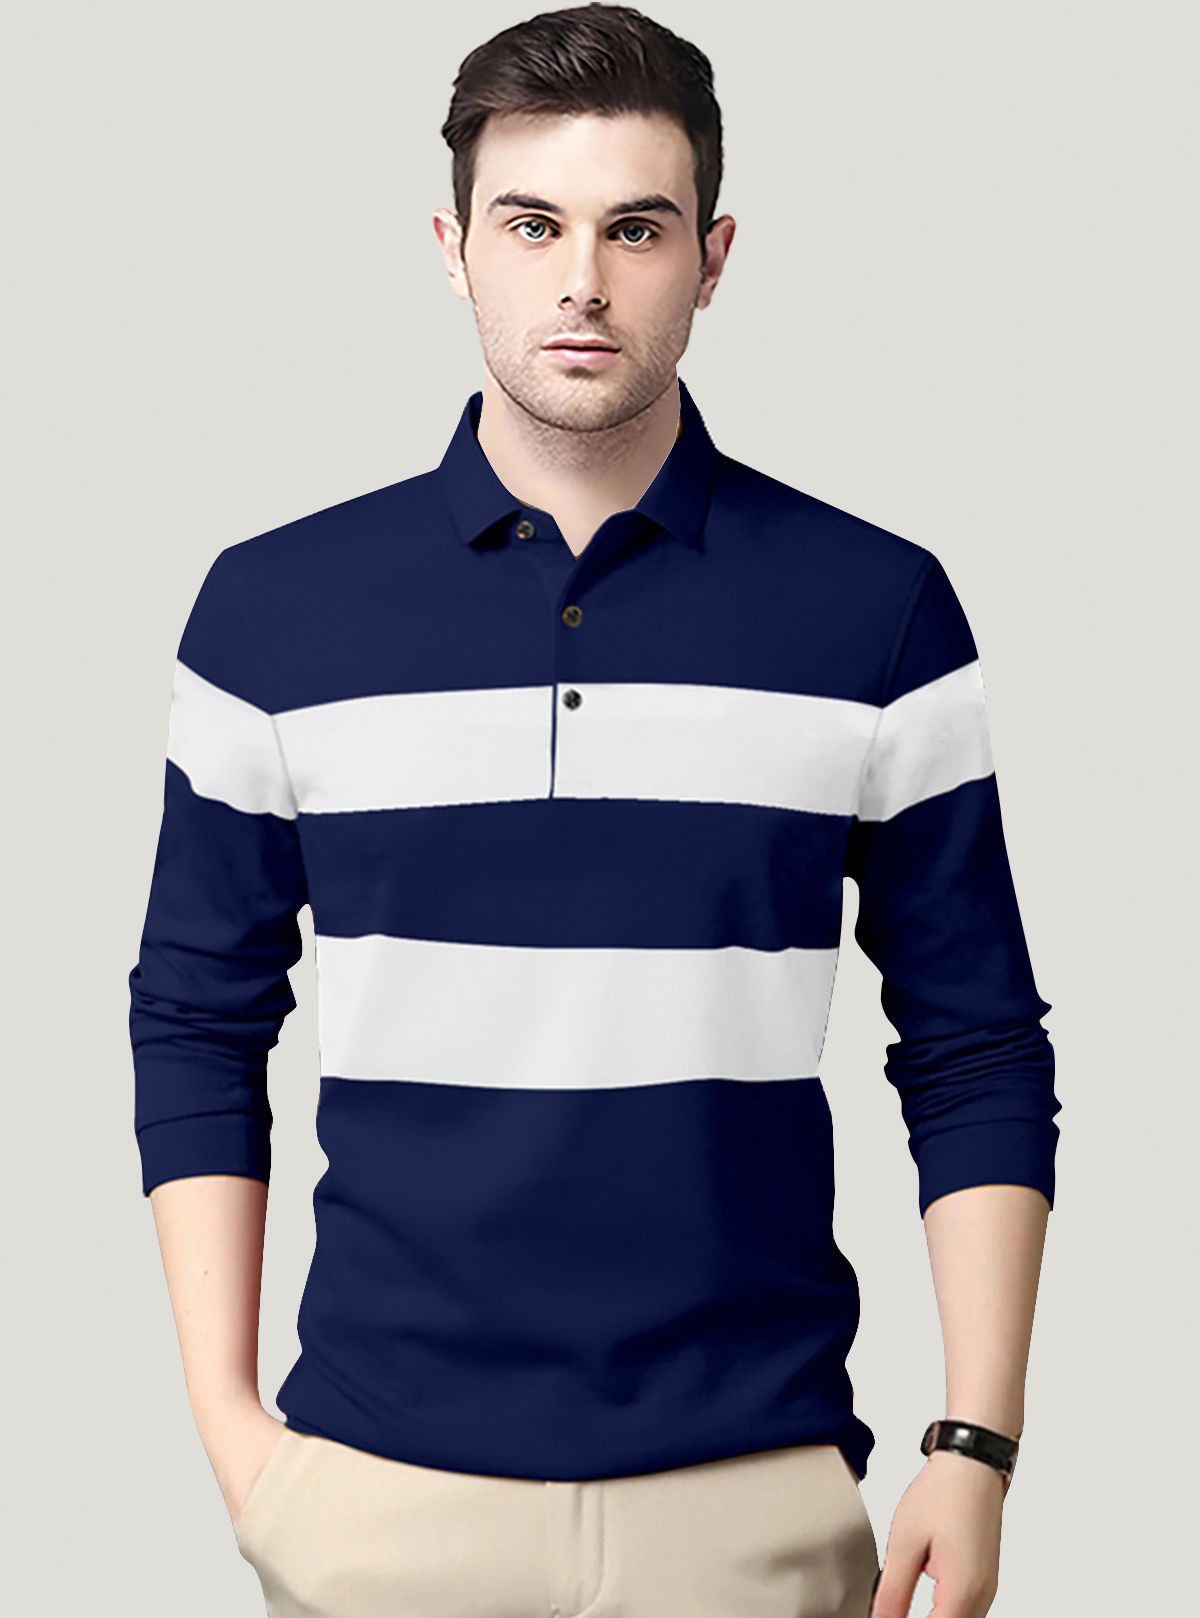     			AUSK - Navy Blue Cotton Blend Regular Fit Men's Polo T Shirt ( Pack of 1 )